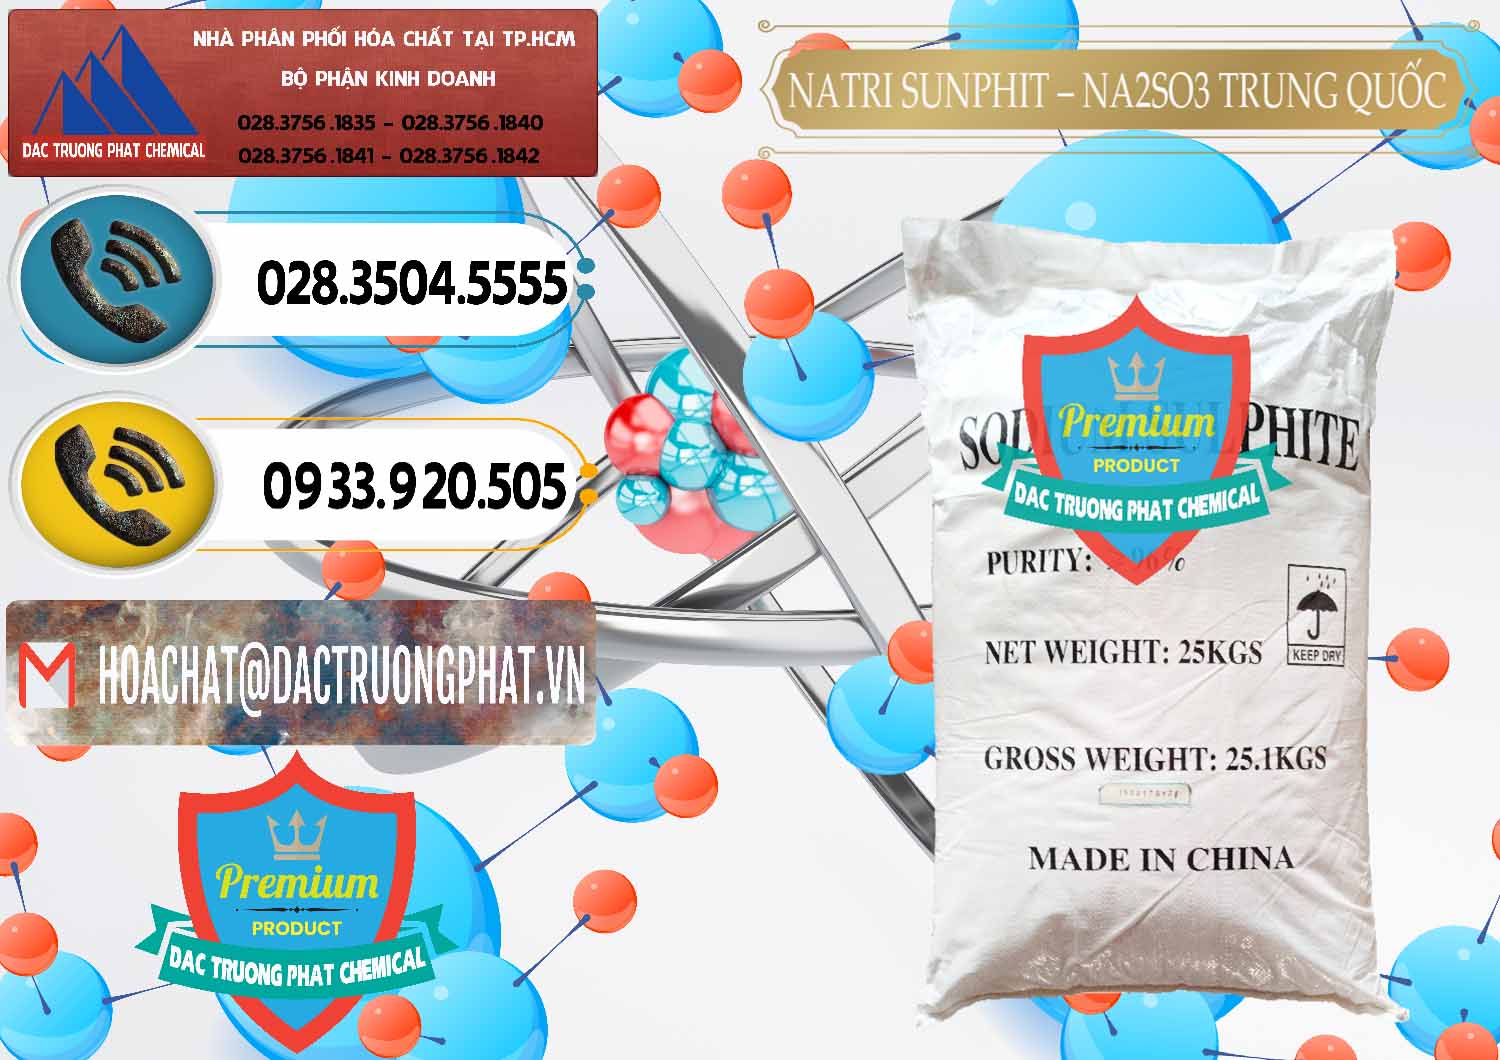 Cty bán _ phân phối Natri Sunphit - NA2SO3 Trung Quốc China - 0106 - Nơi phân phối _ kinh doanh hóa chất tại TP.HCM - hoachatdetnhuom.vn